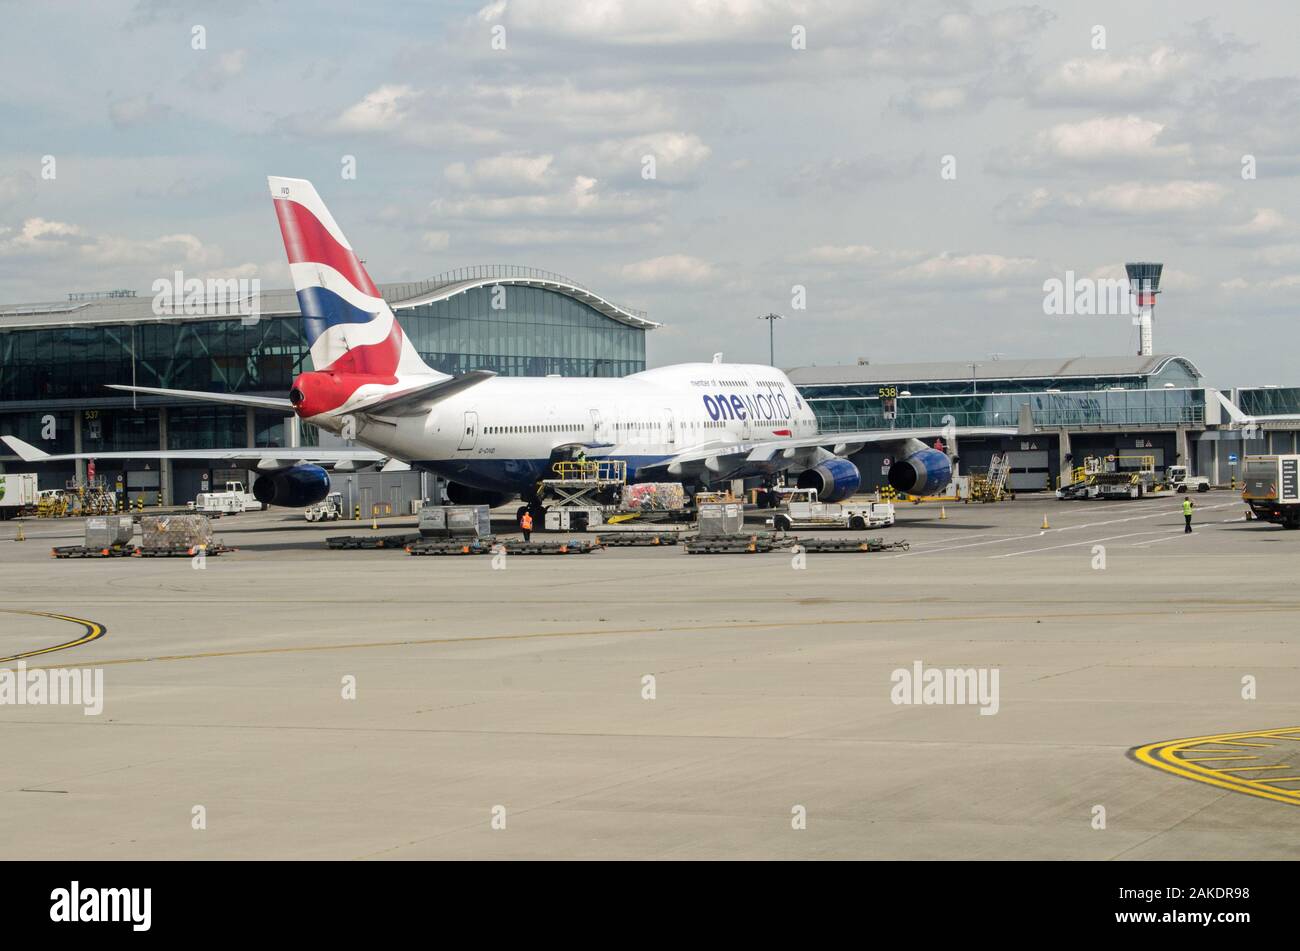 Londres, Reino Unido - 22 de mayo de 2019: Un Jumbo de British Airways - Boeing 747, estacionado en la Terminal 5 del aeropuerto de Heathrow de Londres en un día soleado de verano. Foto de stock